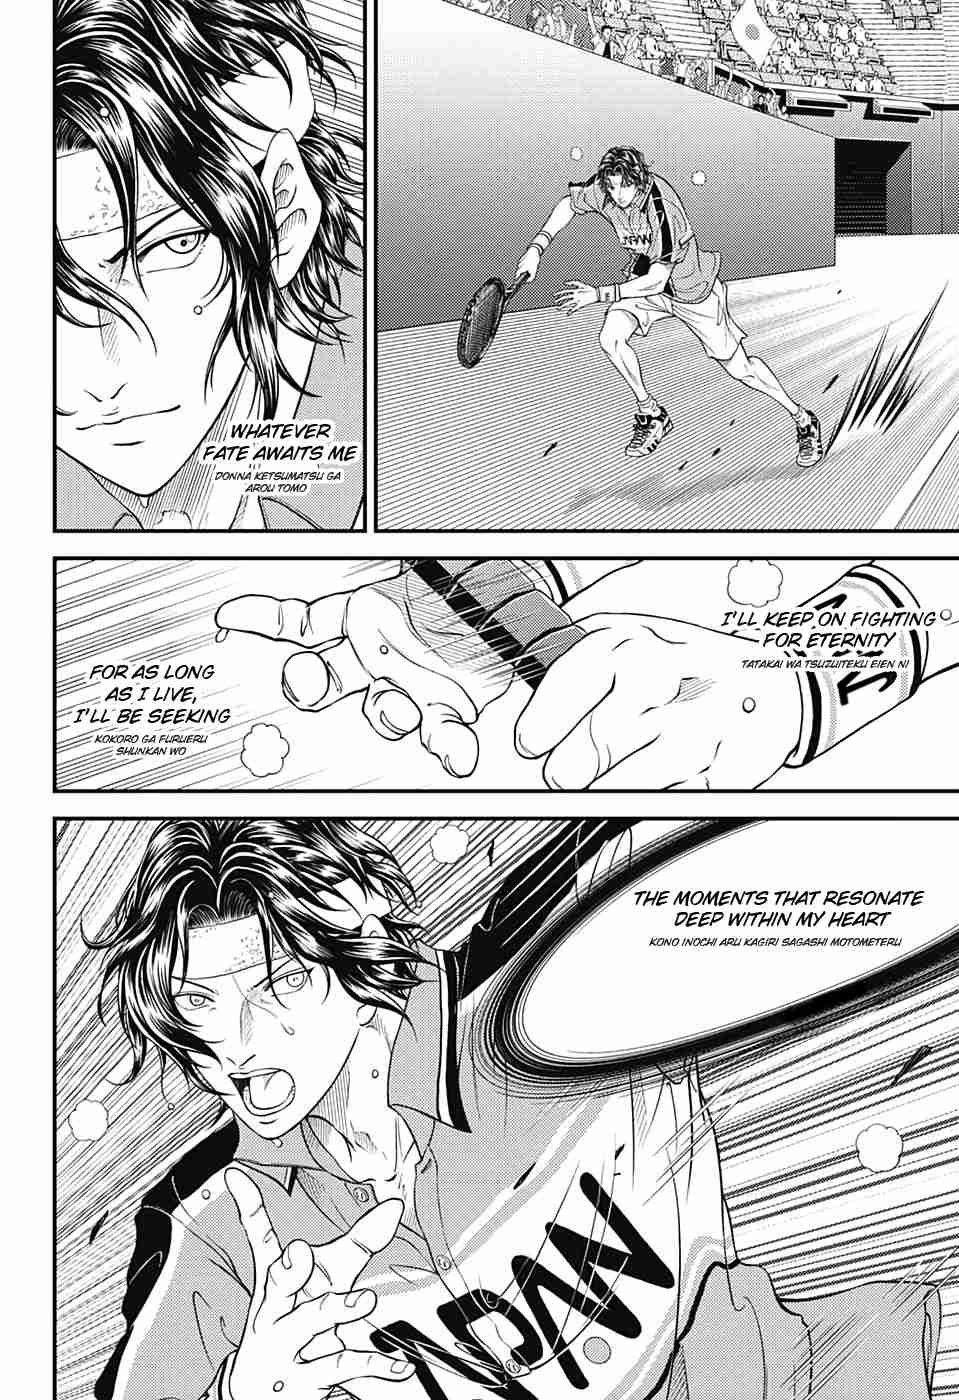 Shin Tennis no Oujisama Vol. 30 Ch. 306 Tezuka Kunimitsu